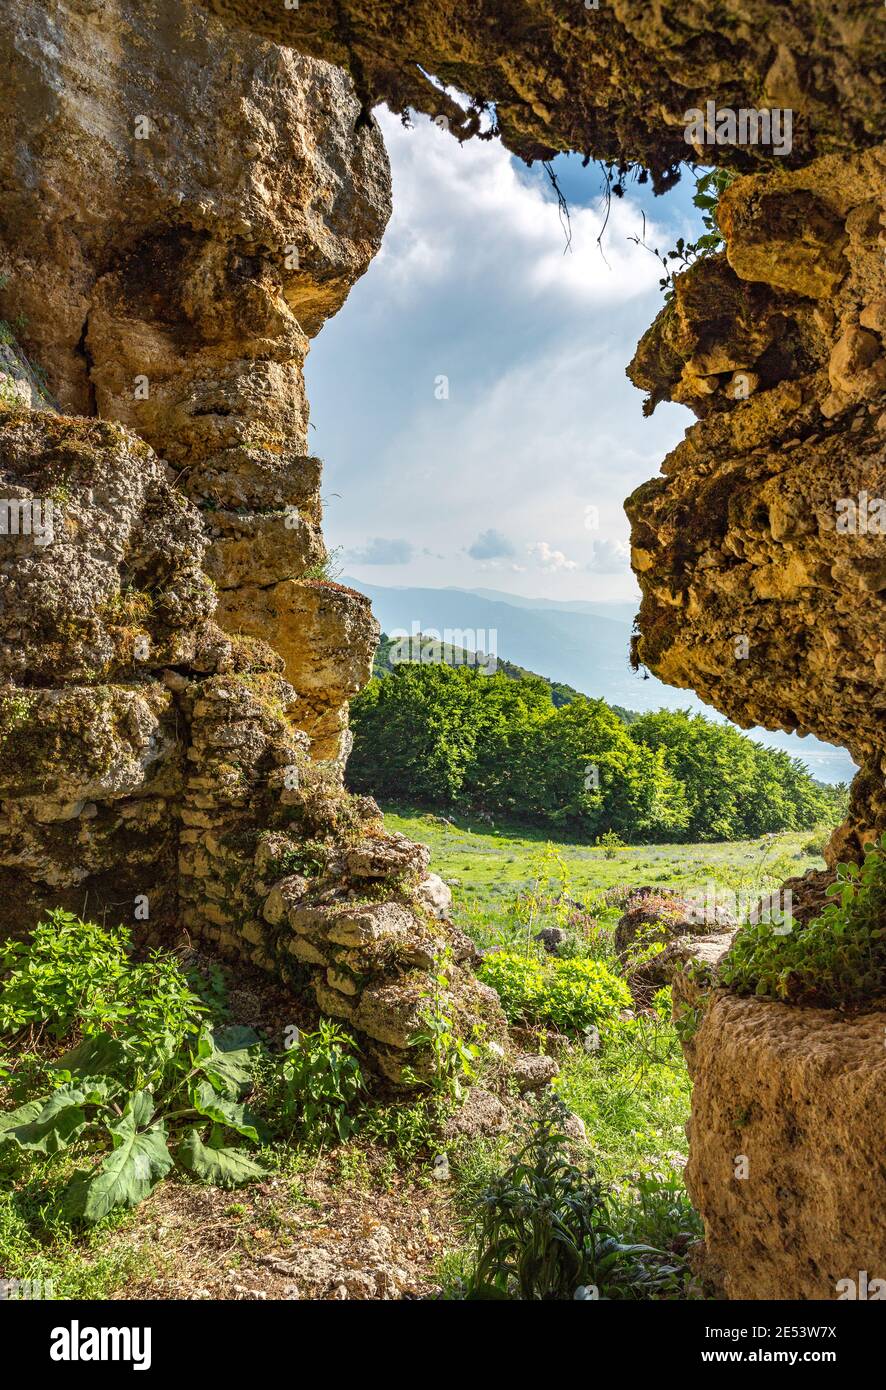 Grotta Santa Maria de Cripptis è una grotta naturale utilizzata in passato come eremo. Parco Nazionale della Maiella, Abruzzo, Italia, europa Foto Stock